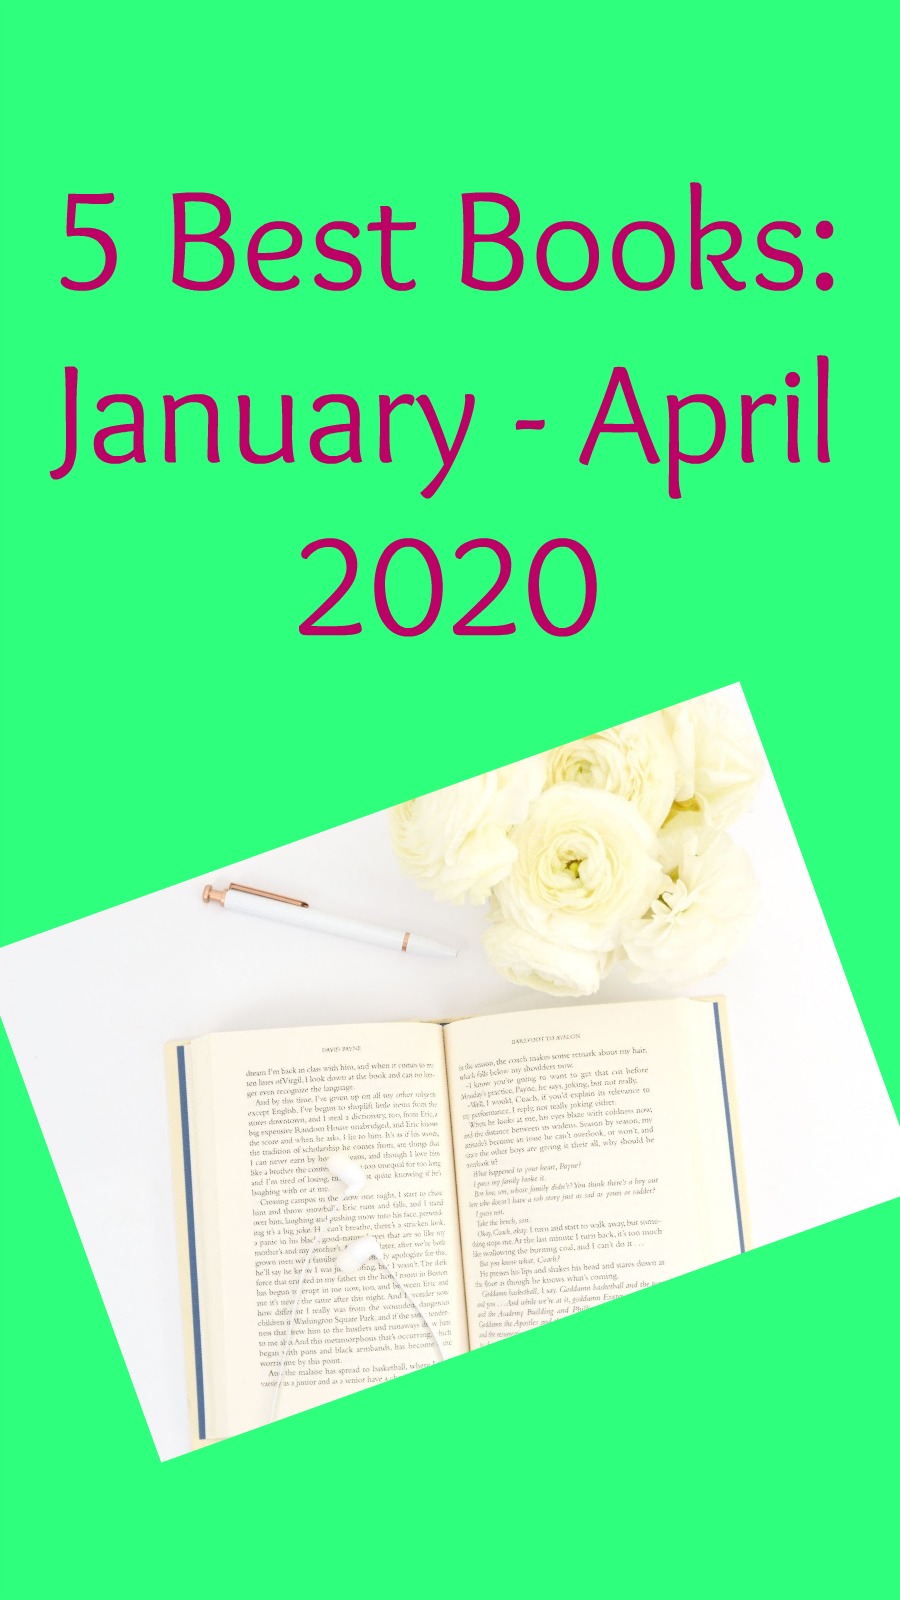 5 Best Books: January - April 2020